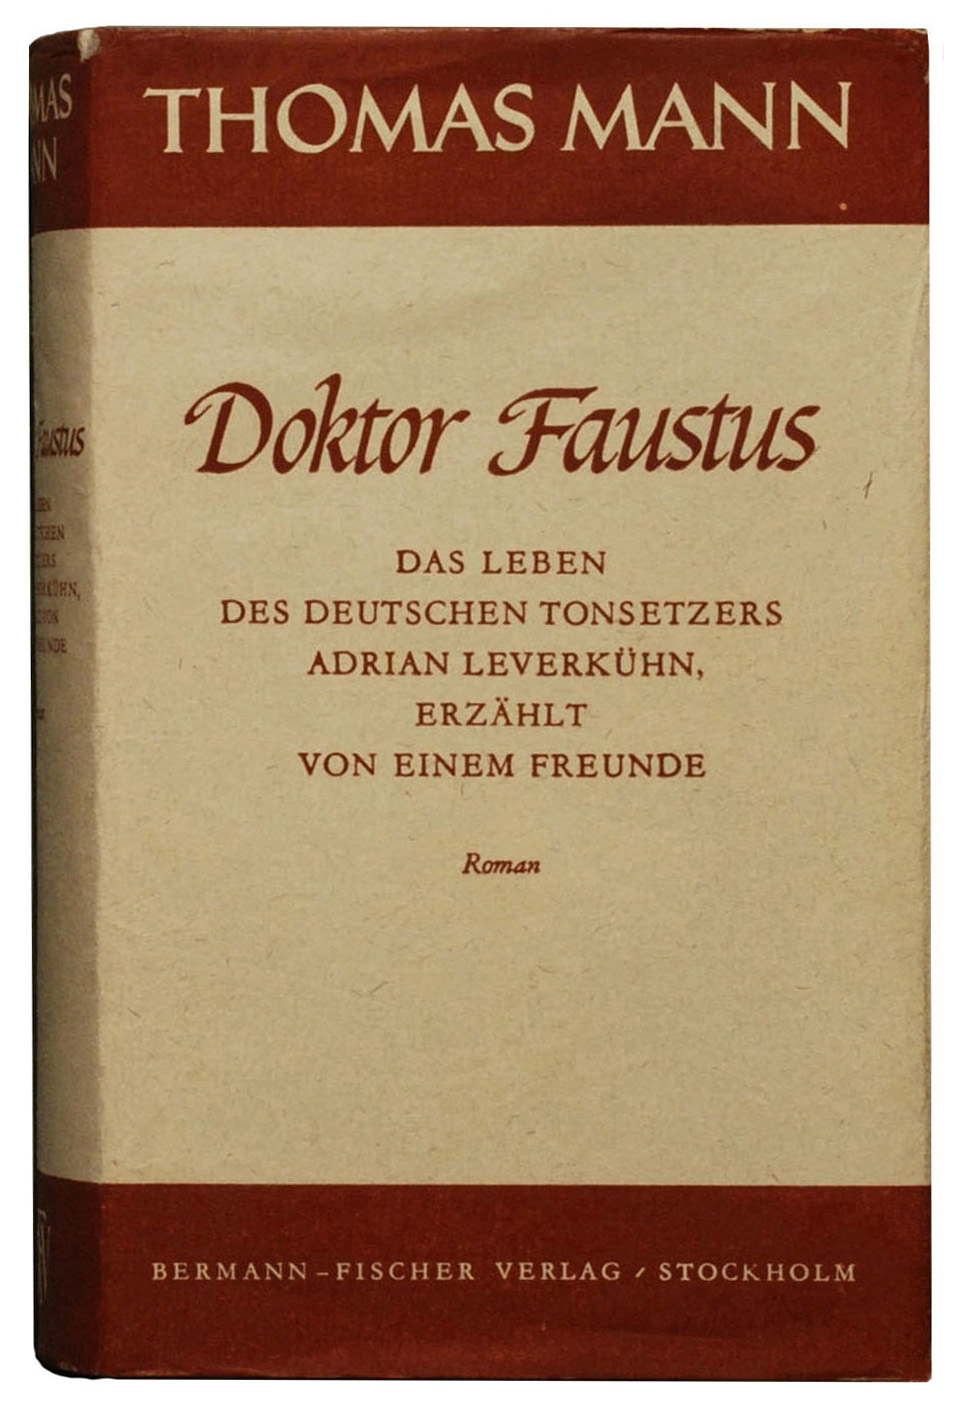 Doutor Faustus